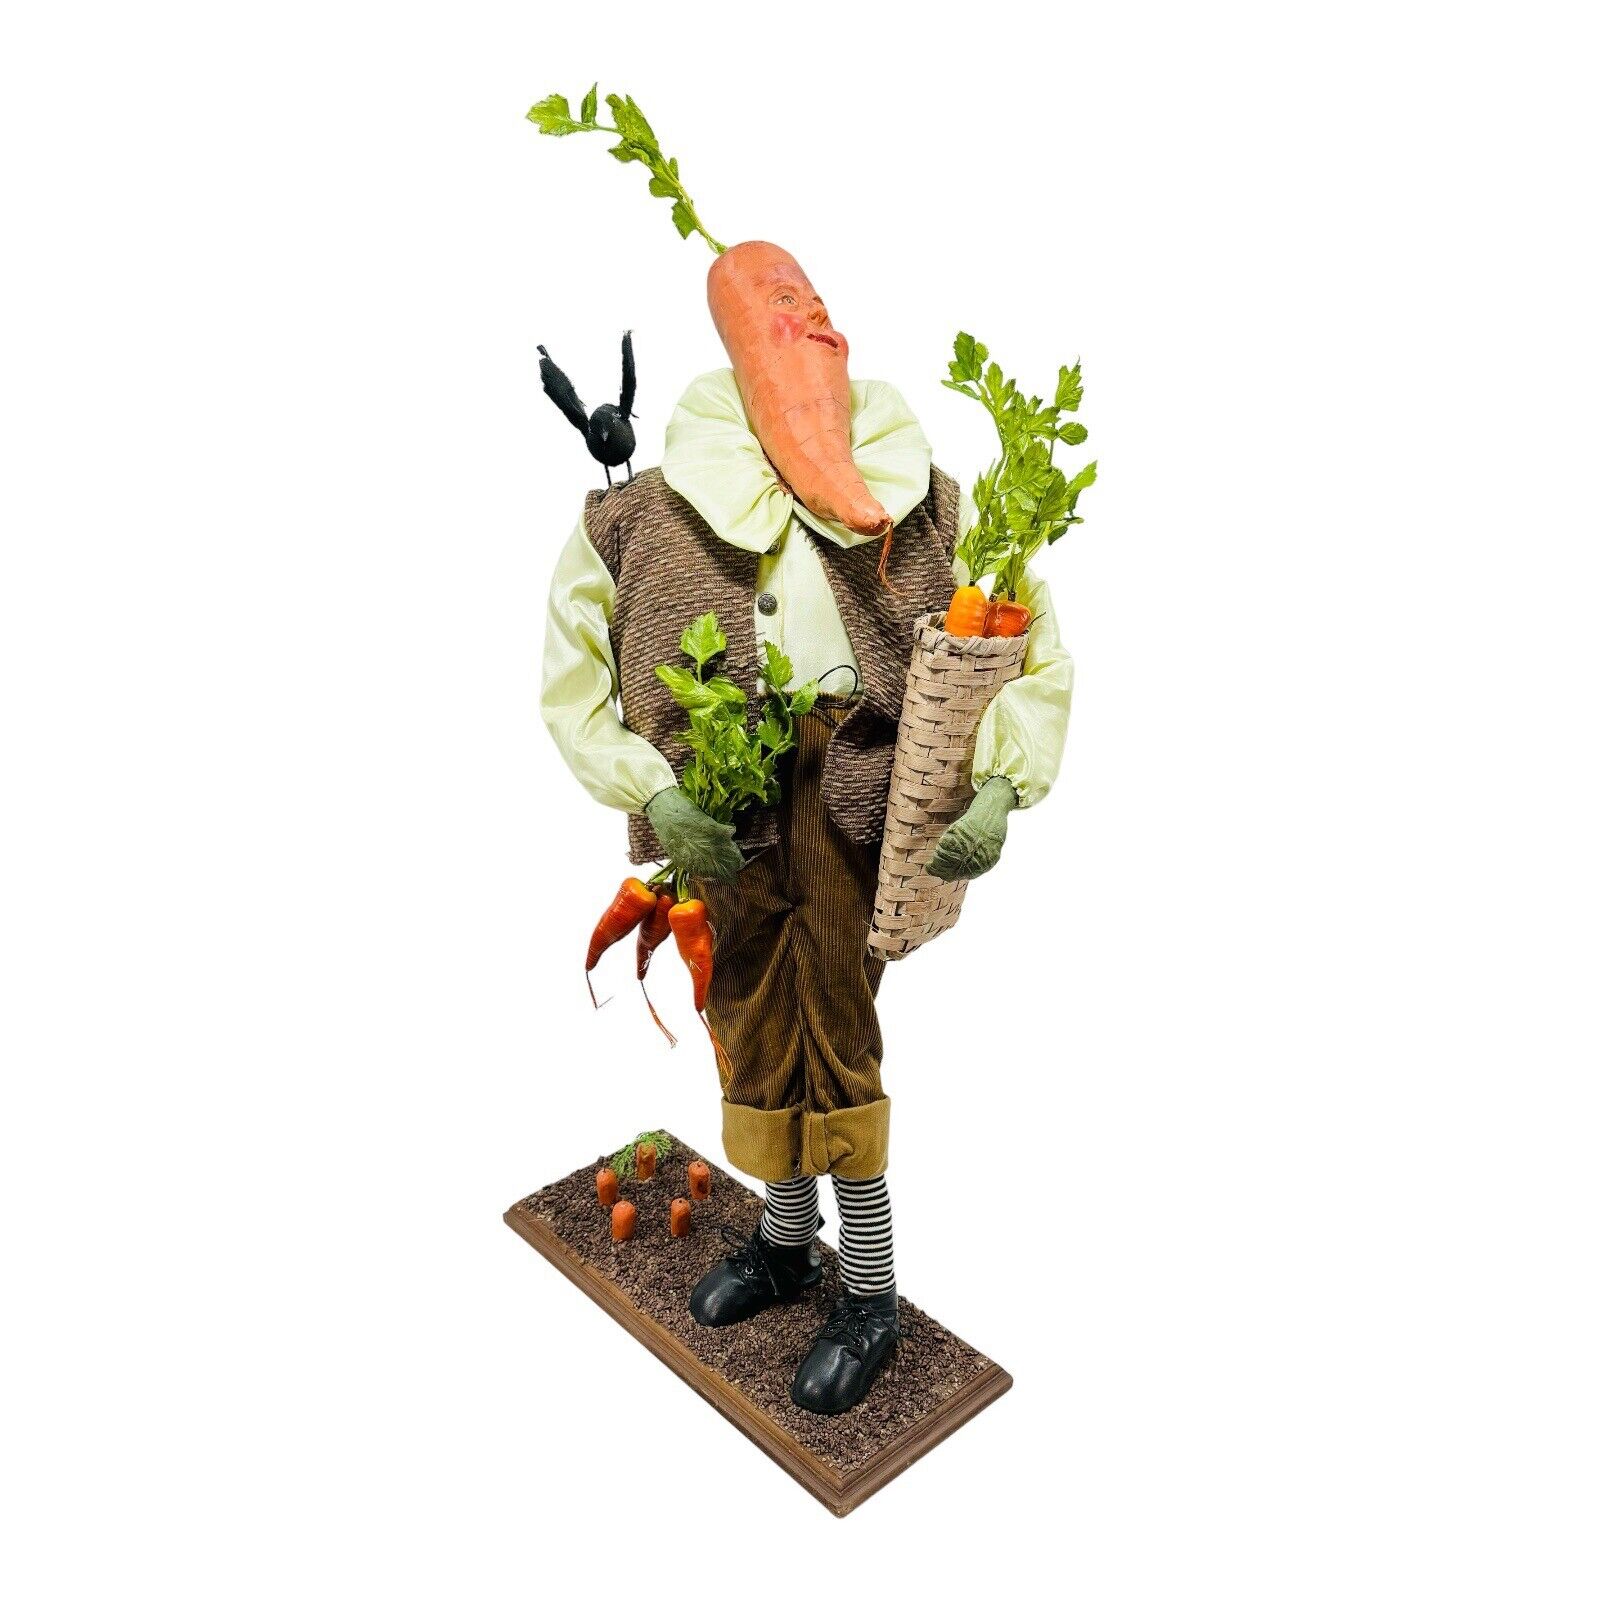 Anthropomorphic Carrot Vegetable Man Figurine In Garden Folk Art 3’2” Tall VTG